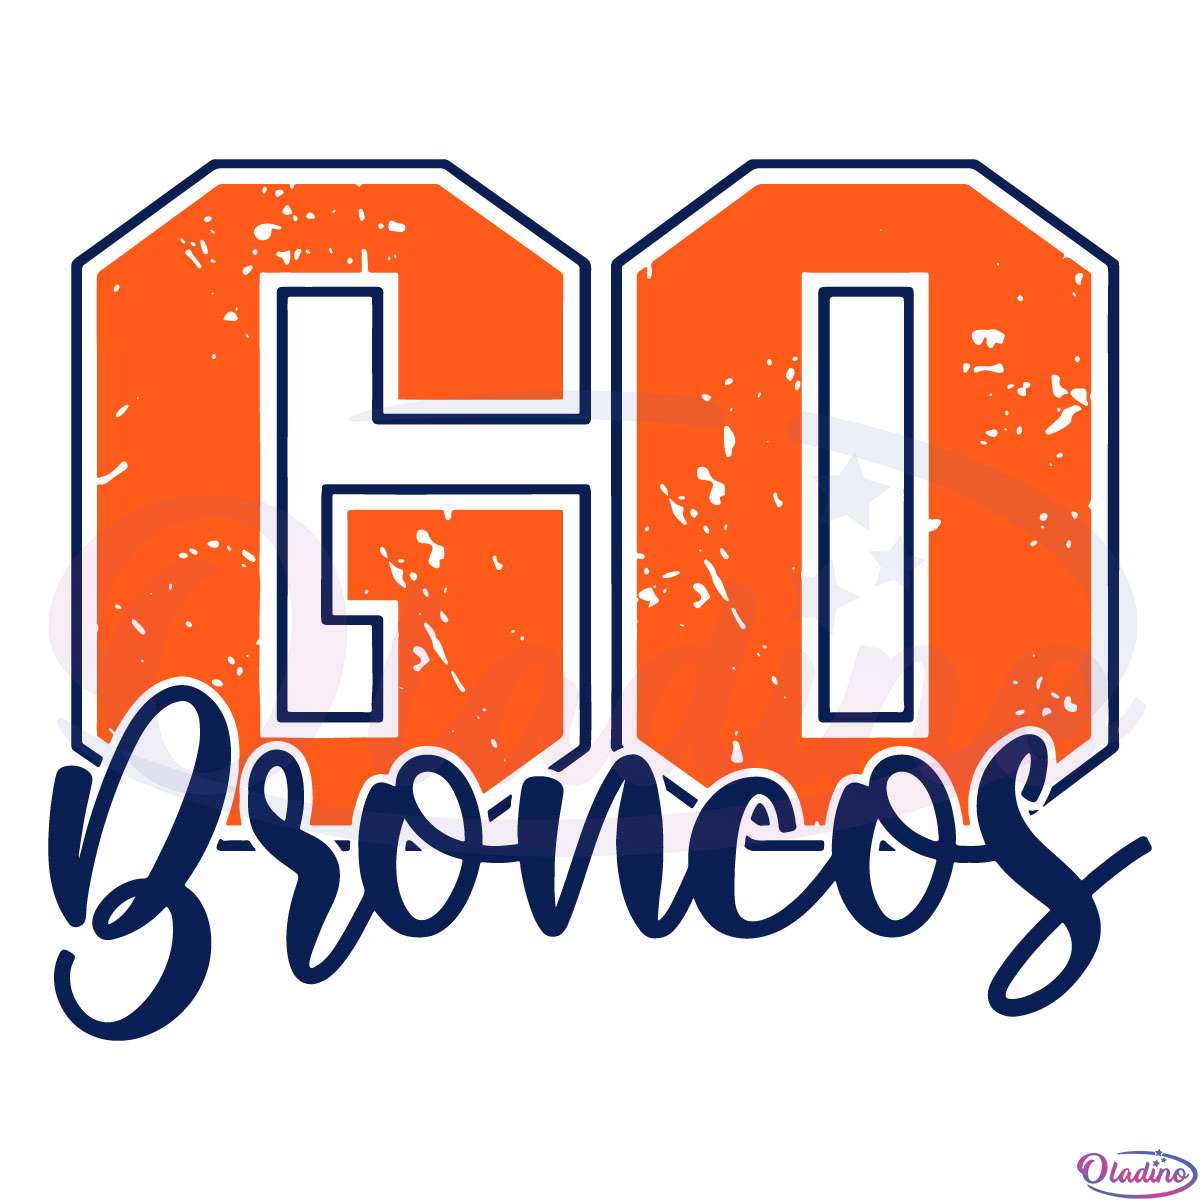 Go Broncos Grunge SVG Digital File